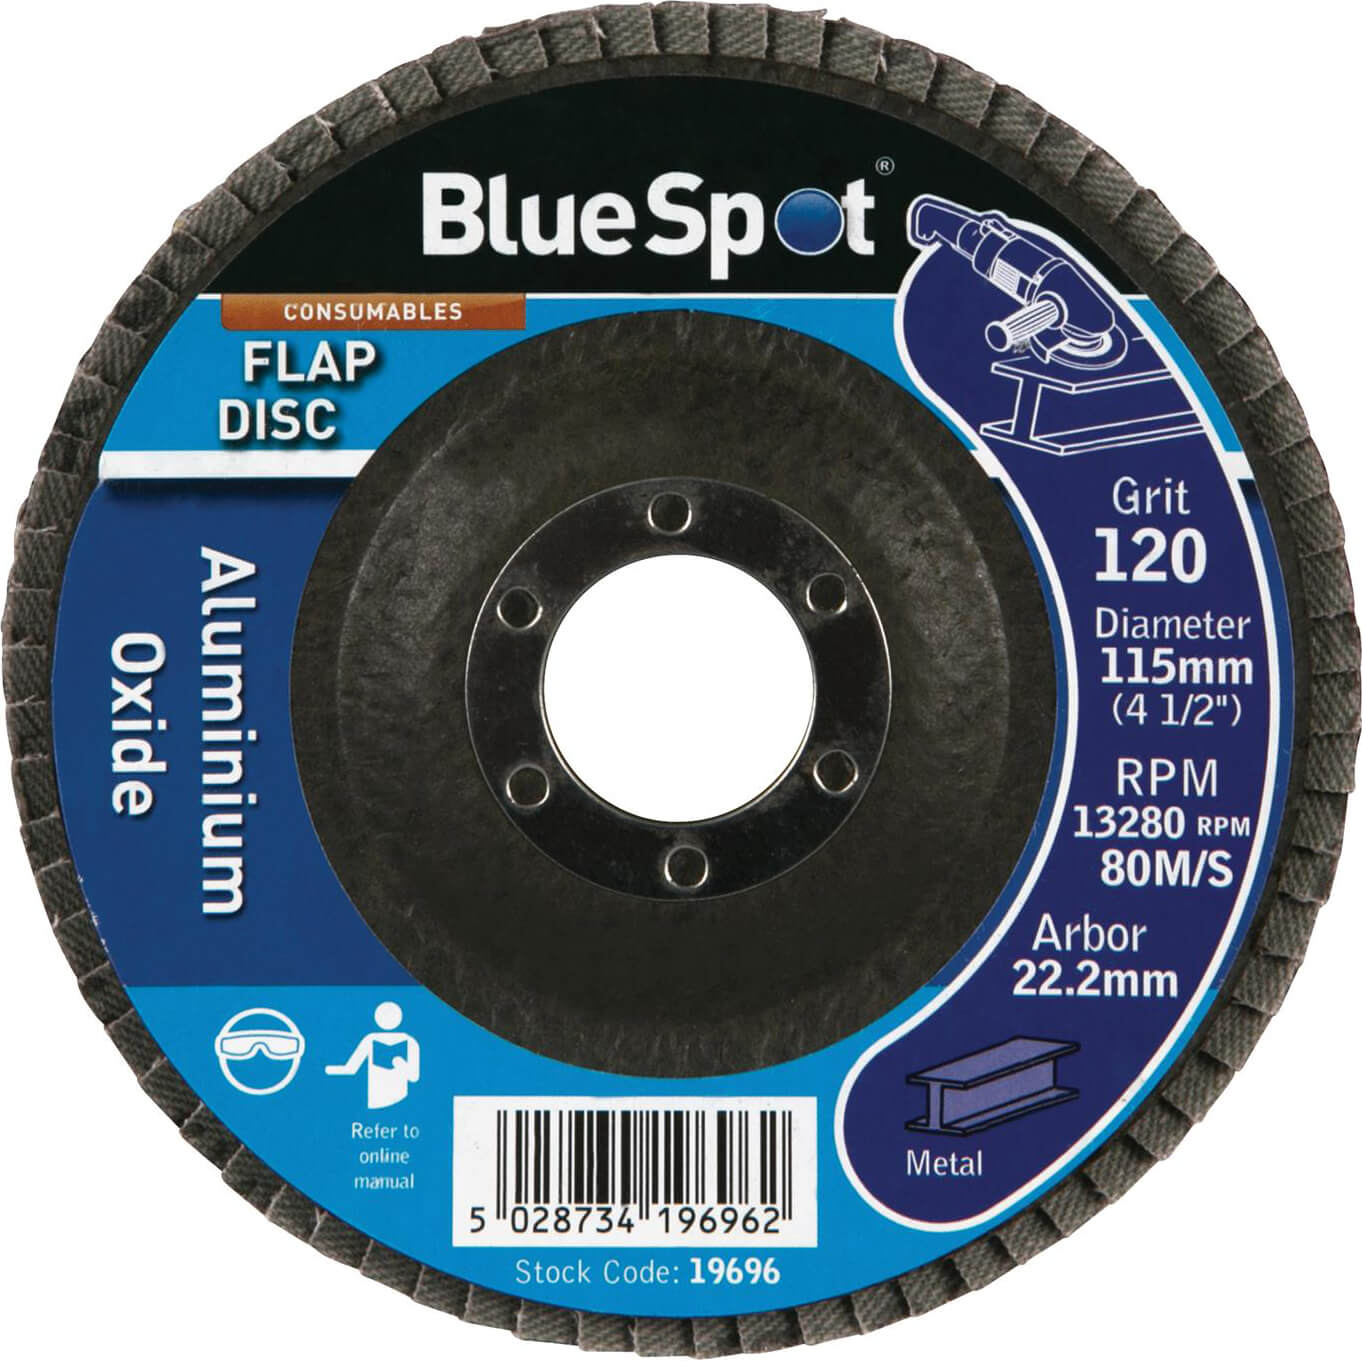 Photo of Bluespot Flap Disc 115mm 115mm 120g